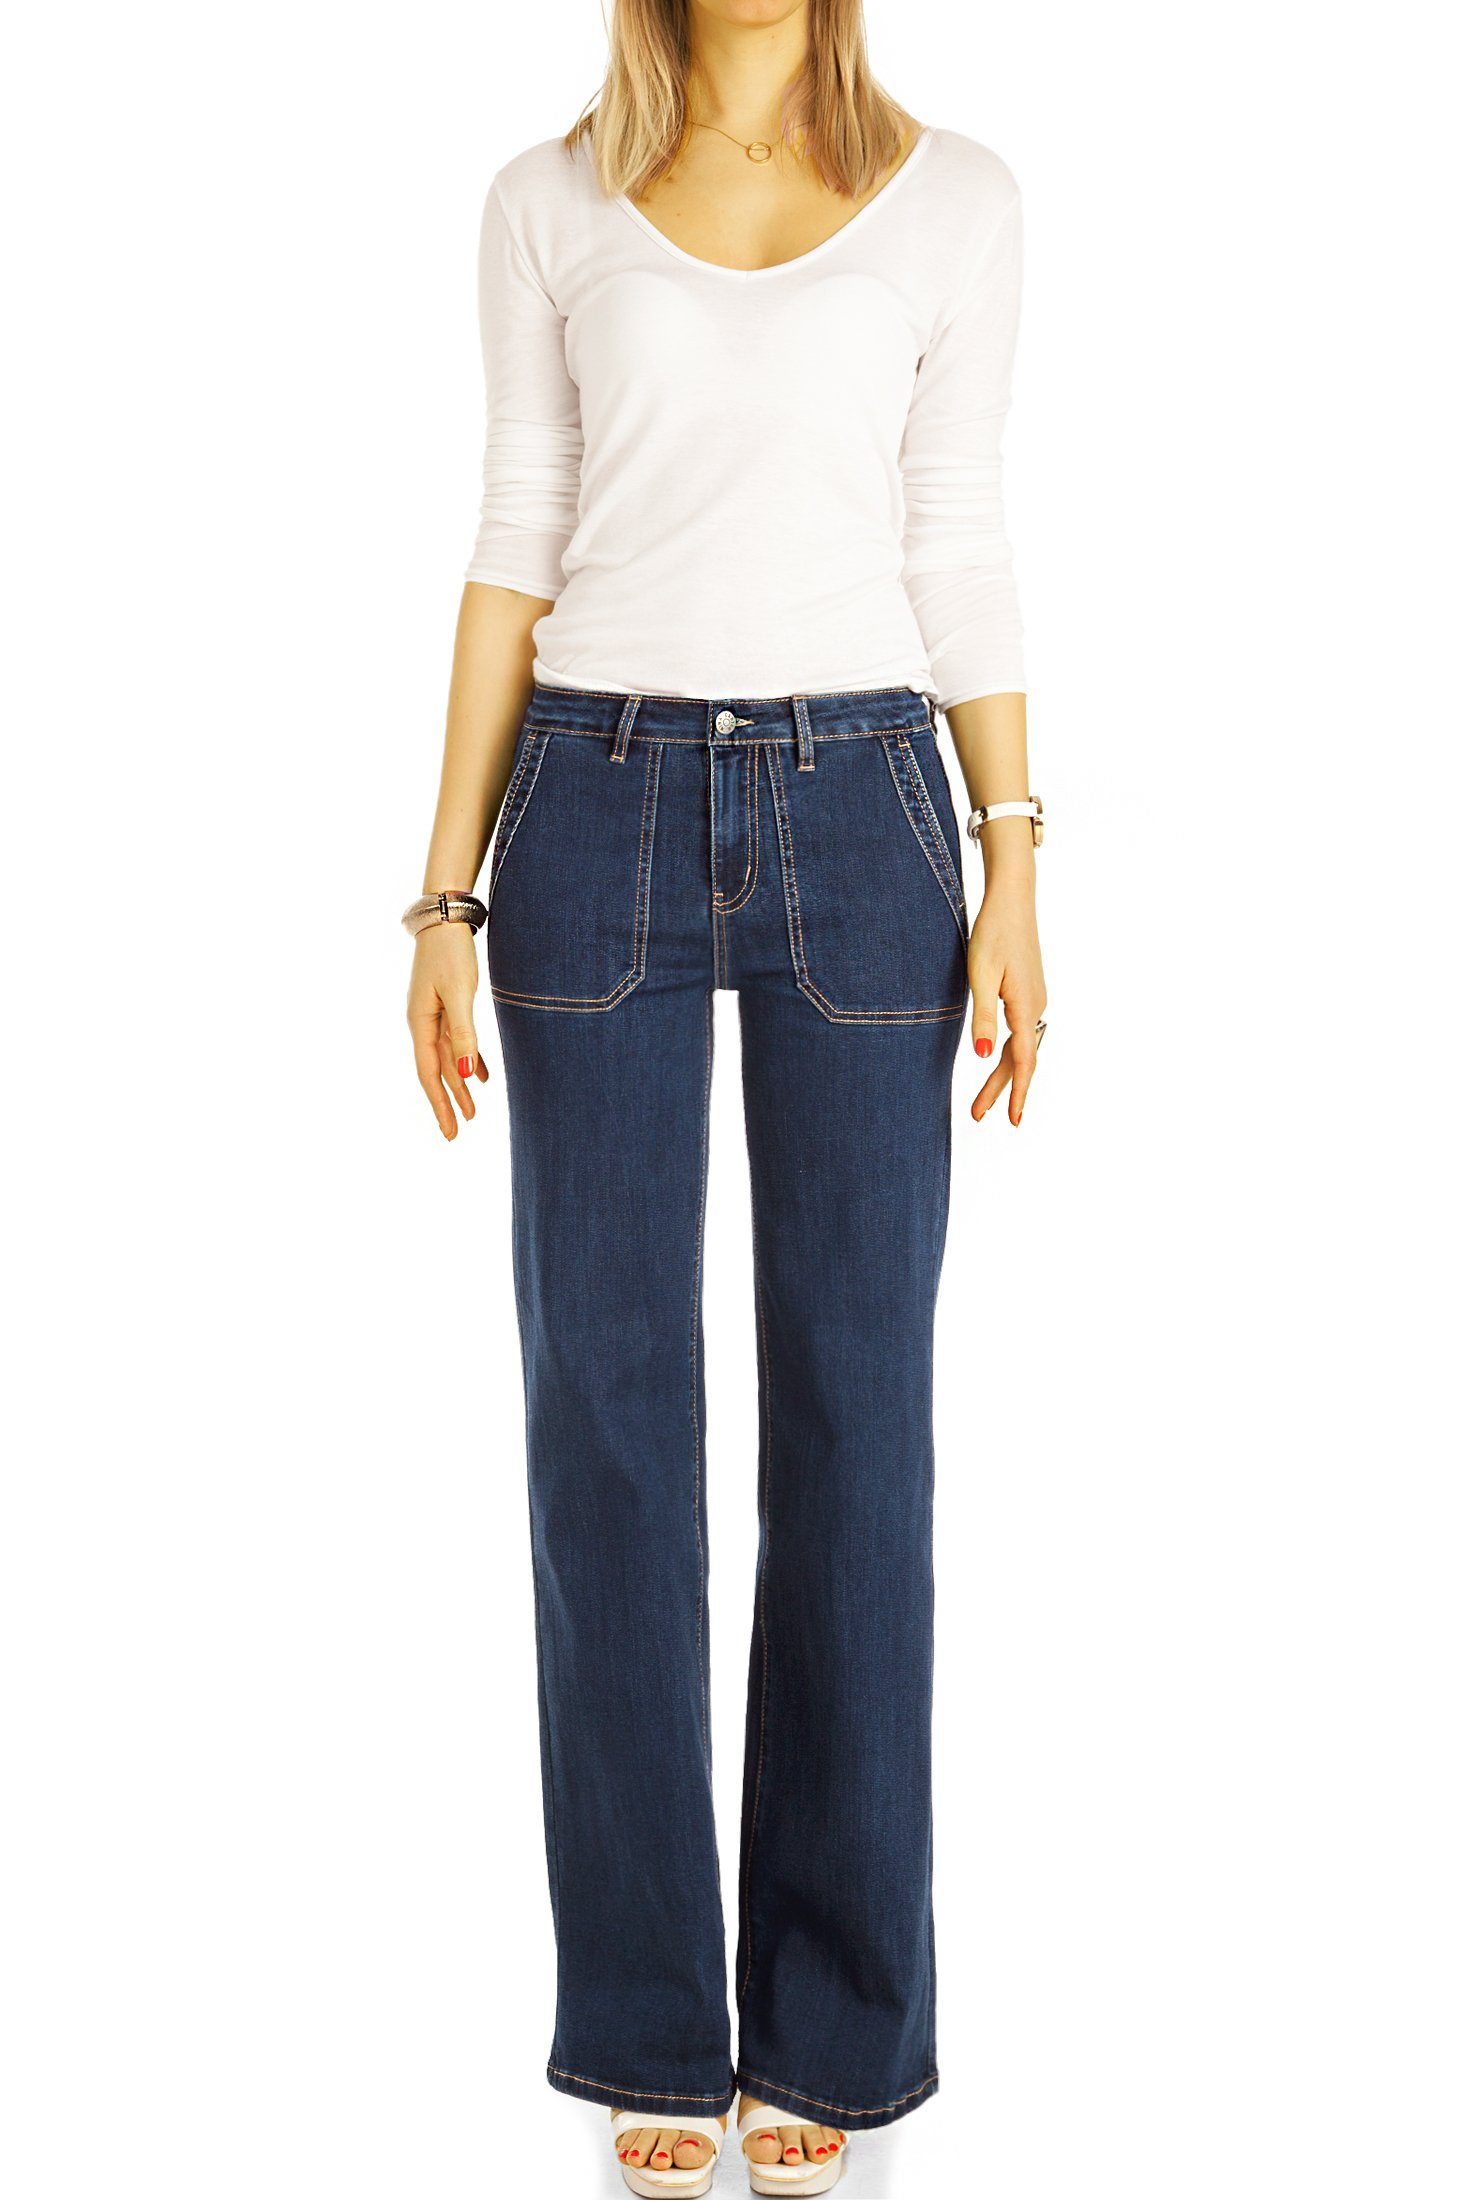 Hosen - Damen Stretch-Anteil, waist 5-Pocket-Style Jeans, be j31k medium Bootcut-Jeans straight mit schwarz - styled Bootcut Passform